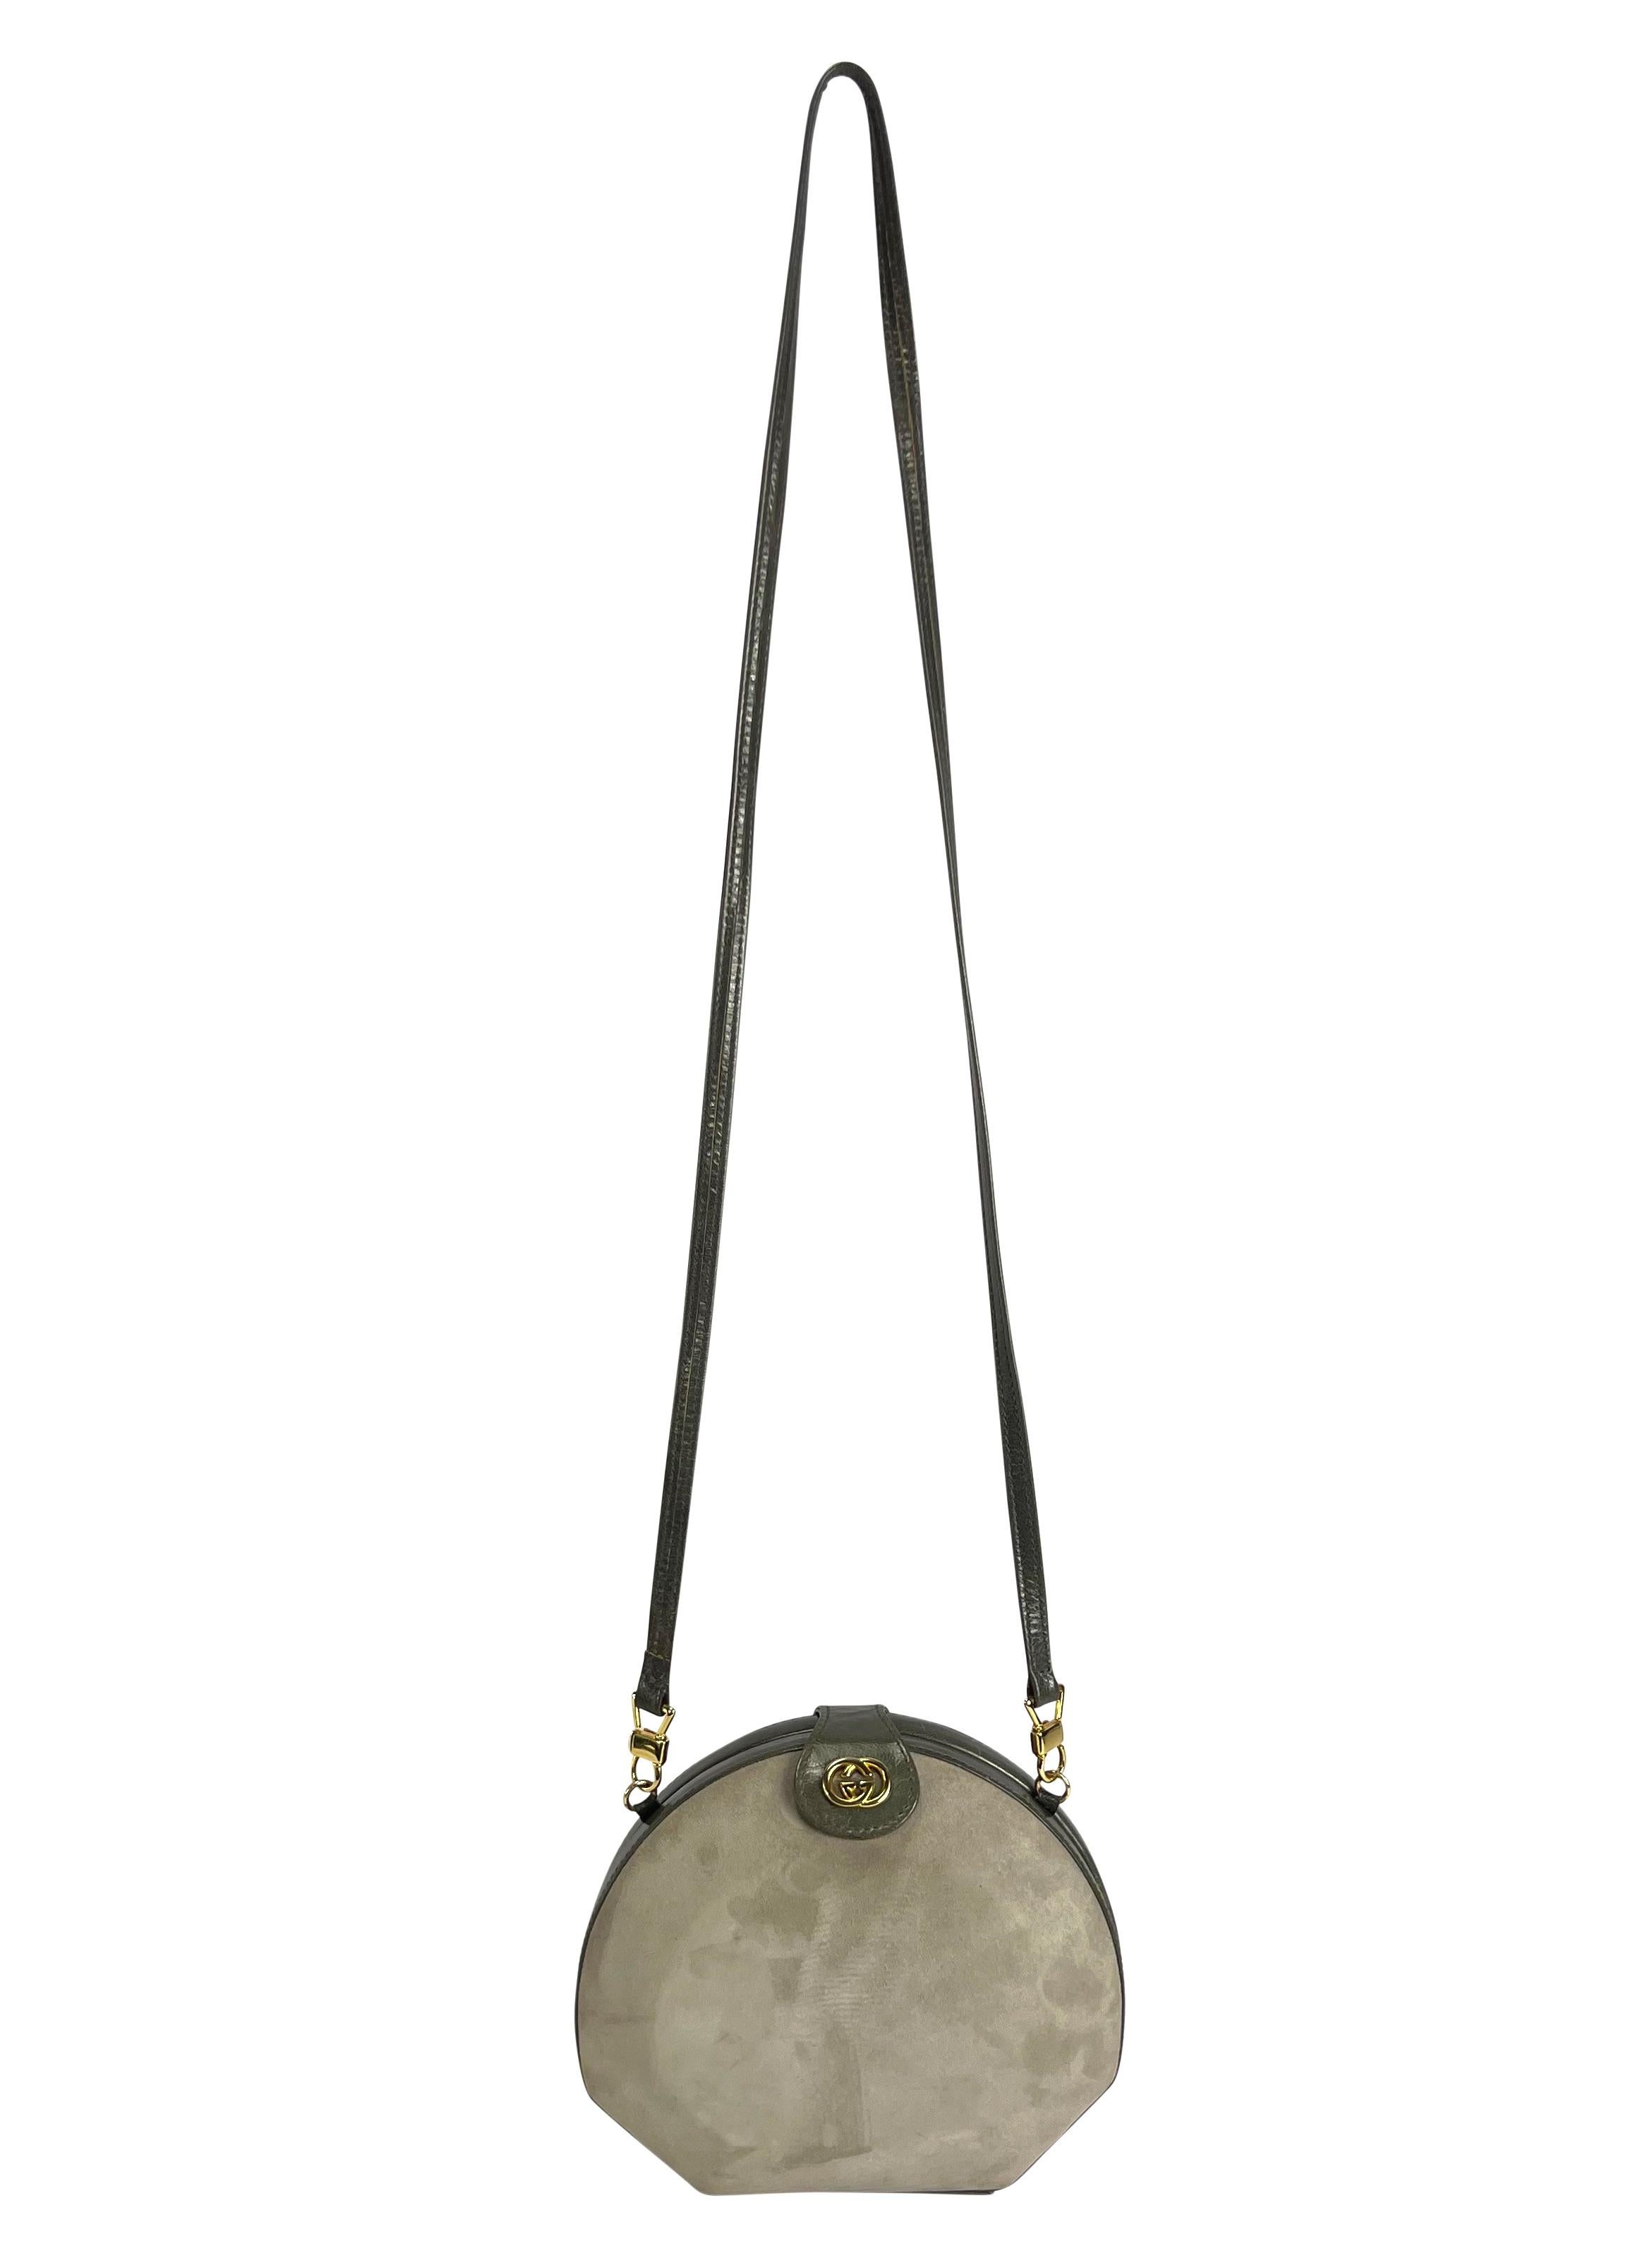 Voici un fabuleux sac à bandoulière convertible Gucci en daim gris. Datant des années 1980, ce sac de style coquille est fabriqué en daim gris clair contrasté par un cuir gris plus foncé au niveau de la fermeture, de la sangle et du rabat. La sangle